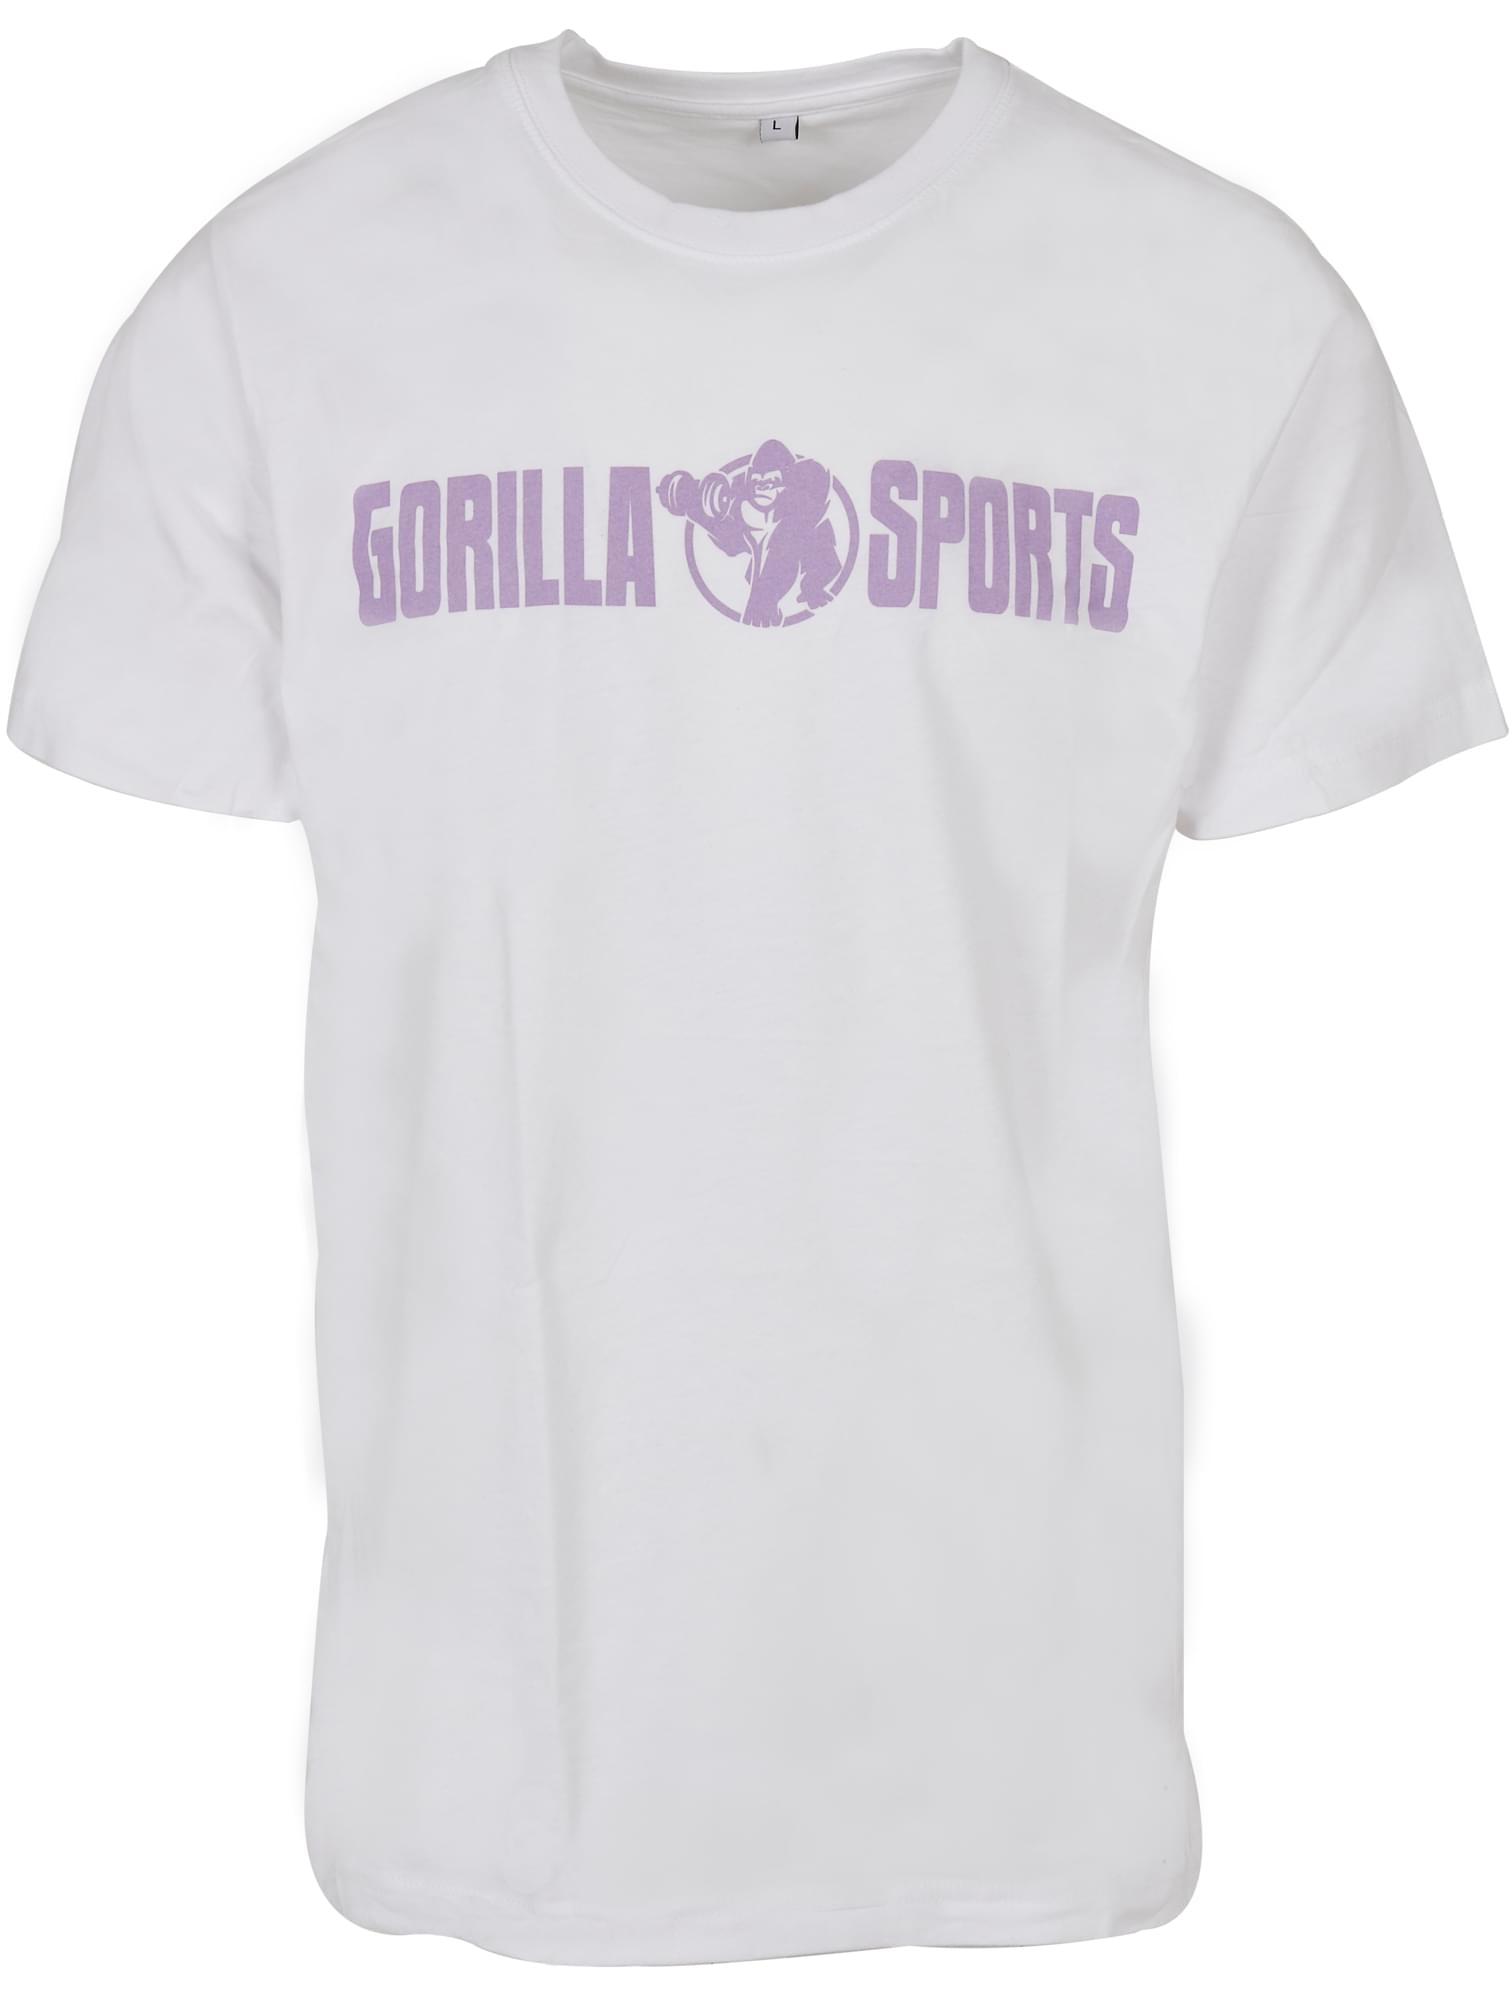 T-shirt Ã col rond - taille S - coloris blanc/violet